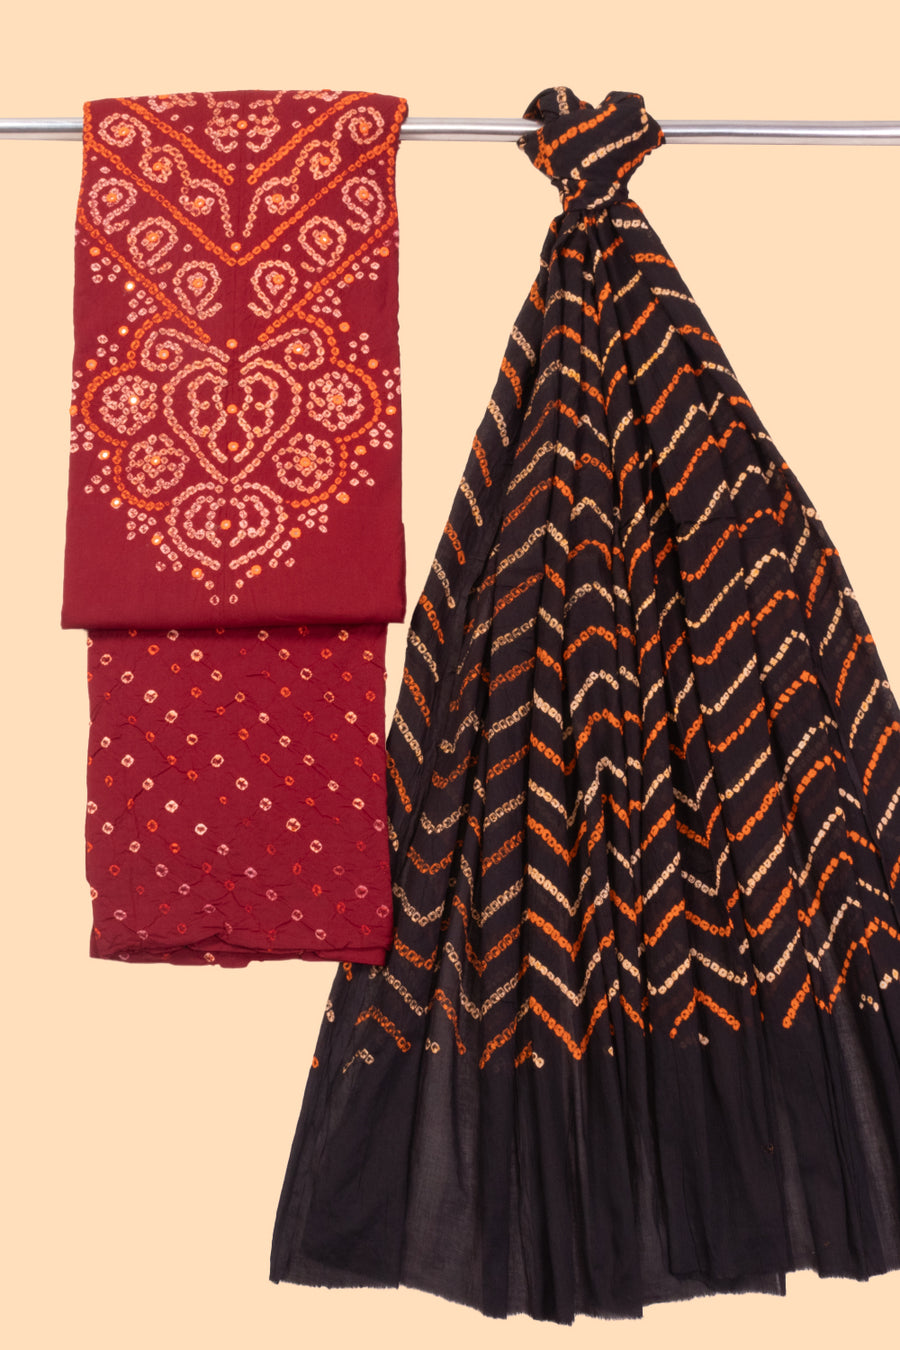 Red Bandhani Cotton 3-Piece Salwar Suit Material 10069614 -Avishya 